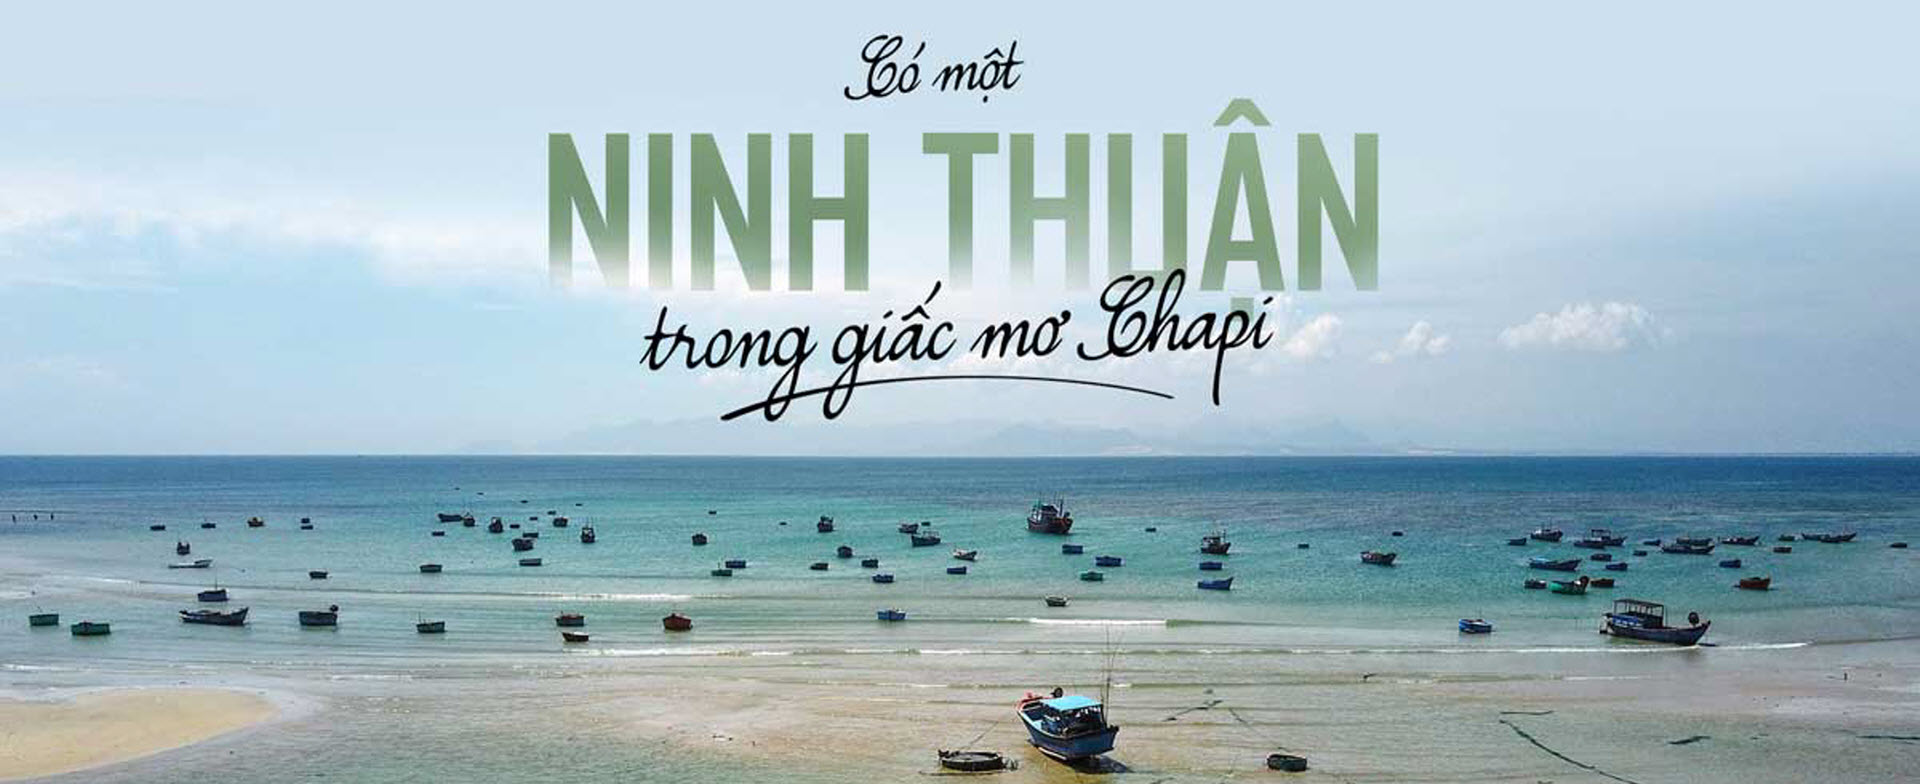 Sailing Bay Ninh Thuận